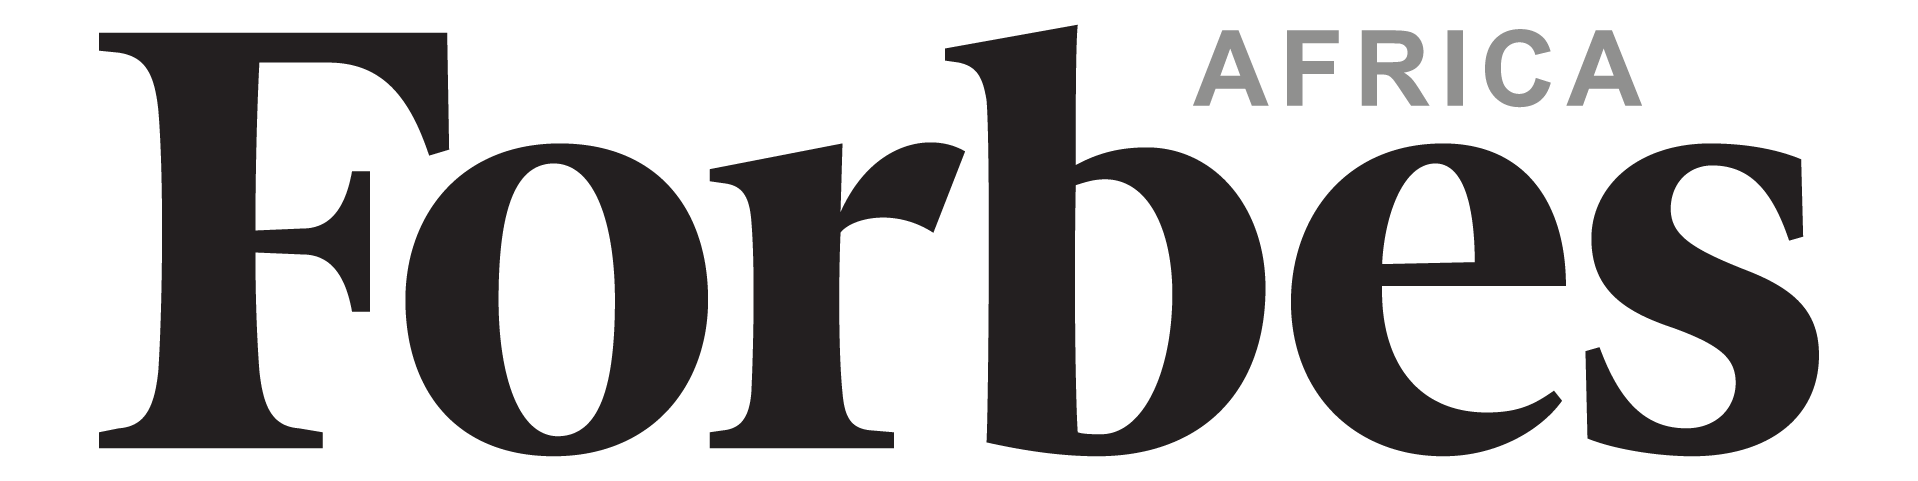 Forbes Afrika - Media - Förlag